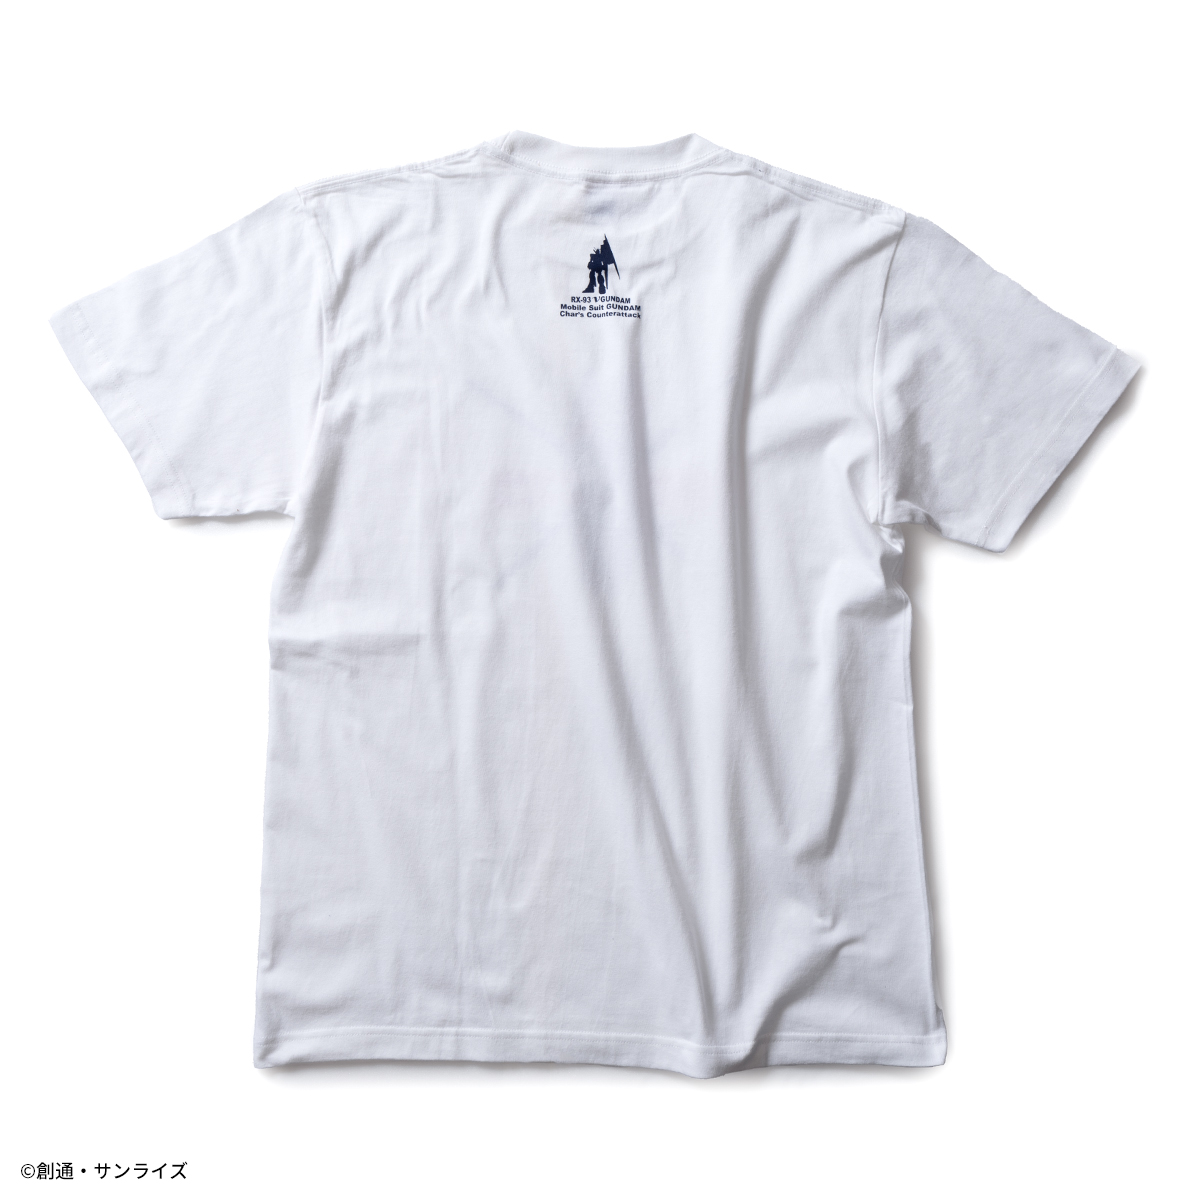 STRICT-G『機動戦士ガンダム 逆襲のシャア』半袖Tシャツ νガンダム シールド